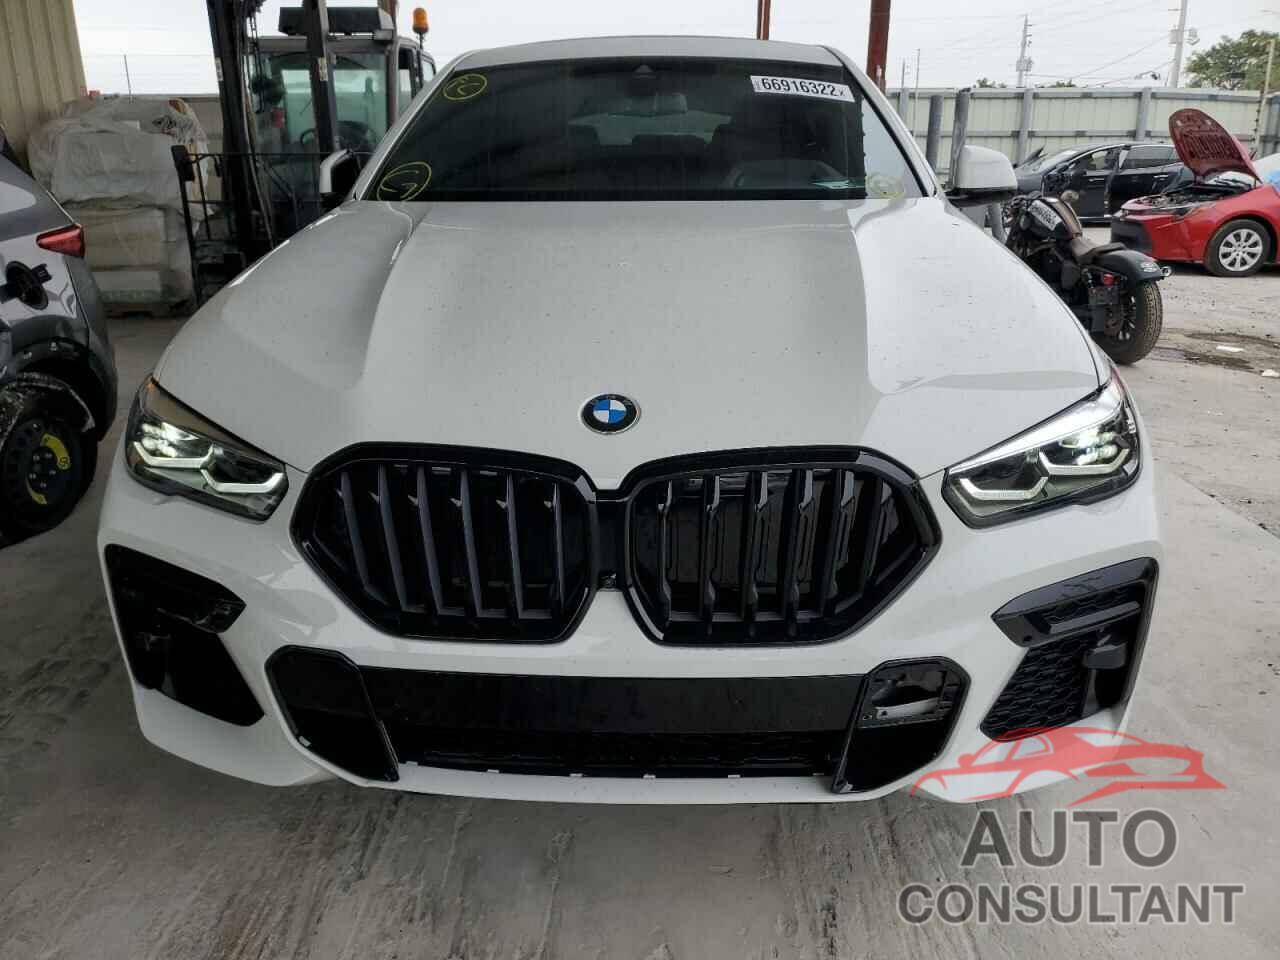 BMW X6 2022 - 5UXCY6C04N9N18330